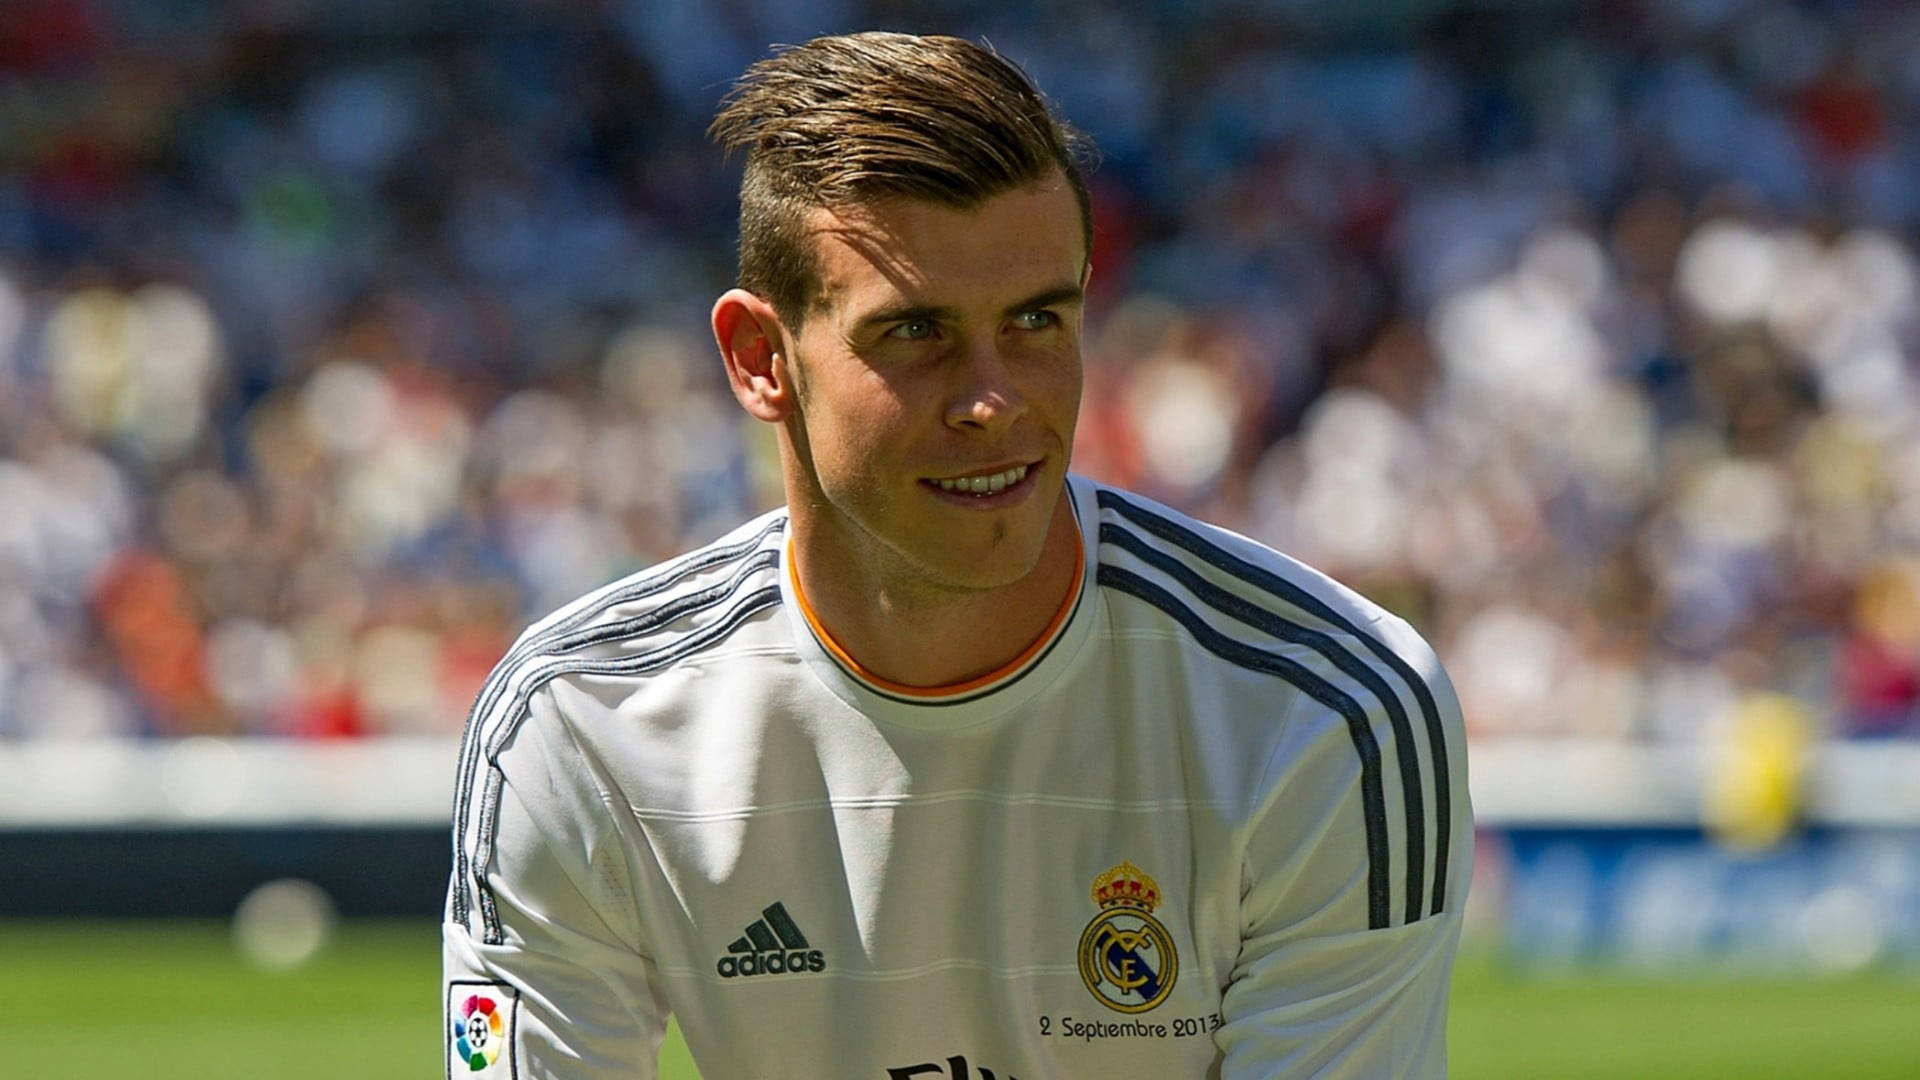 Smiling Gareth Bale